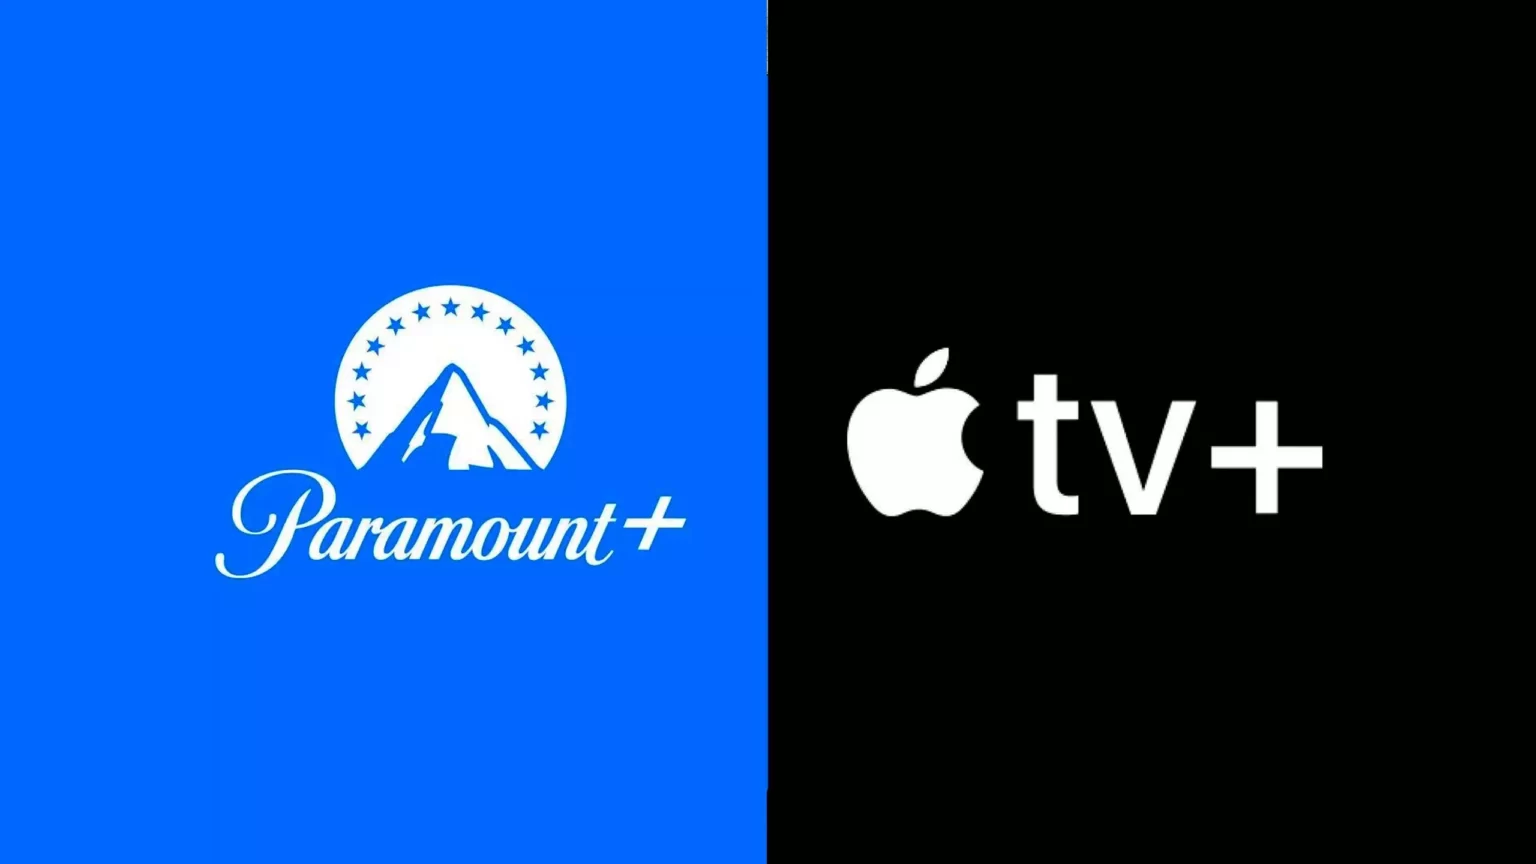 As estreias da Apple TV+ e Paramount+ para o fim de semana